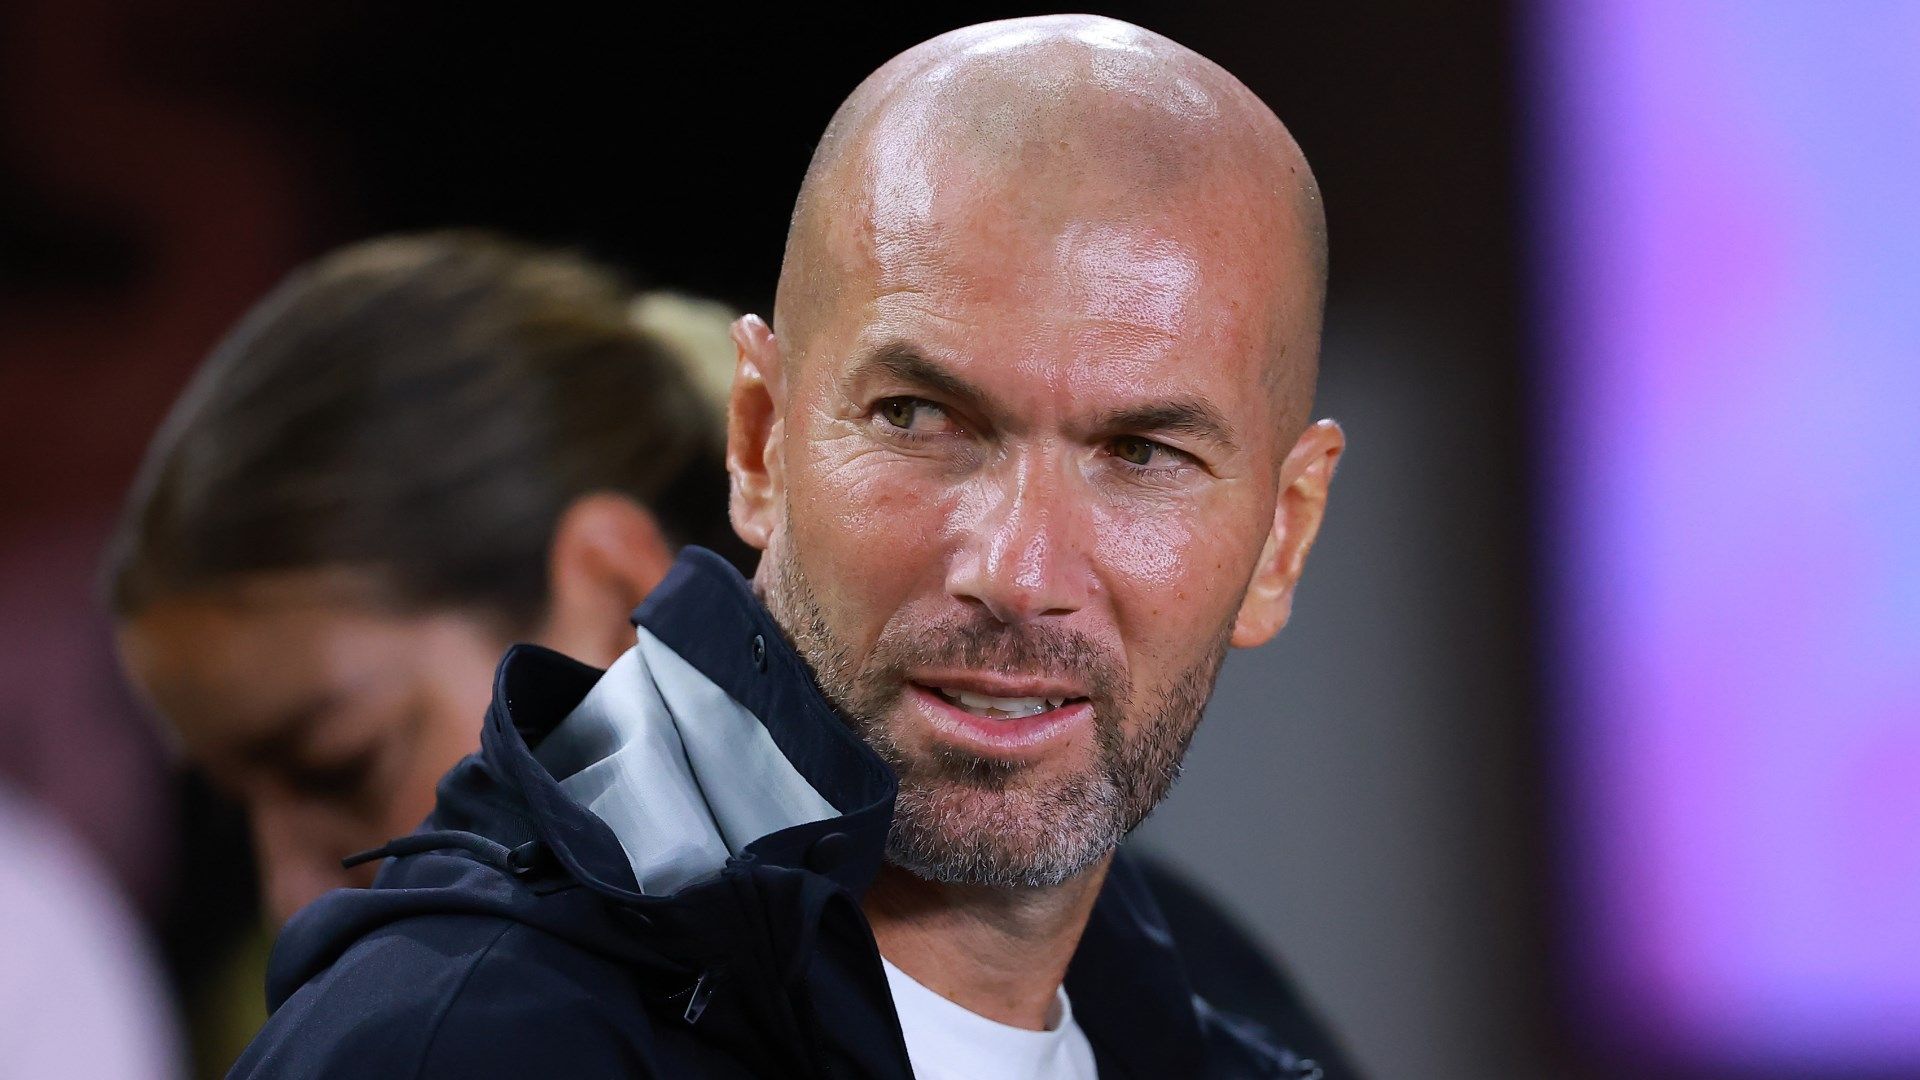 OM, les confidences de Makélélé sur Zidane thumbnail